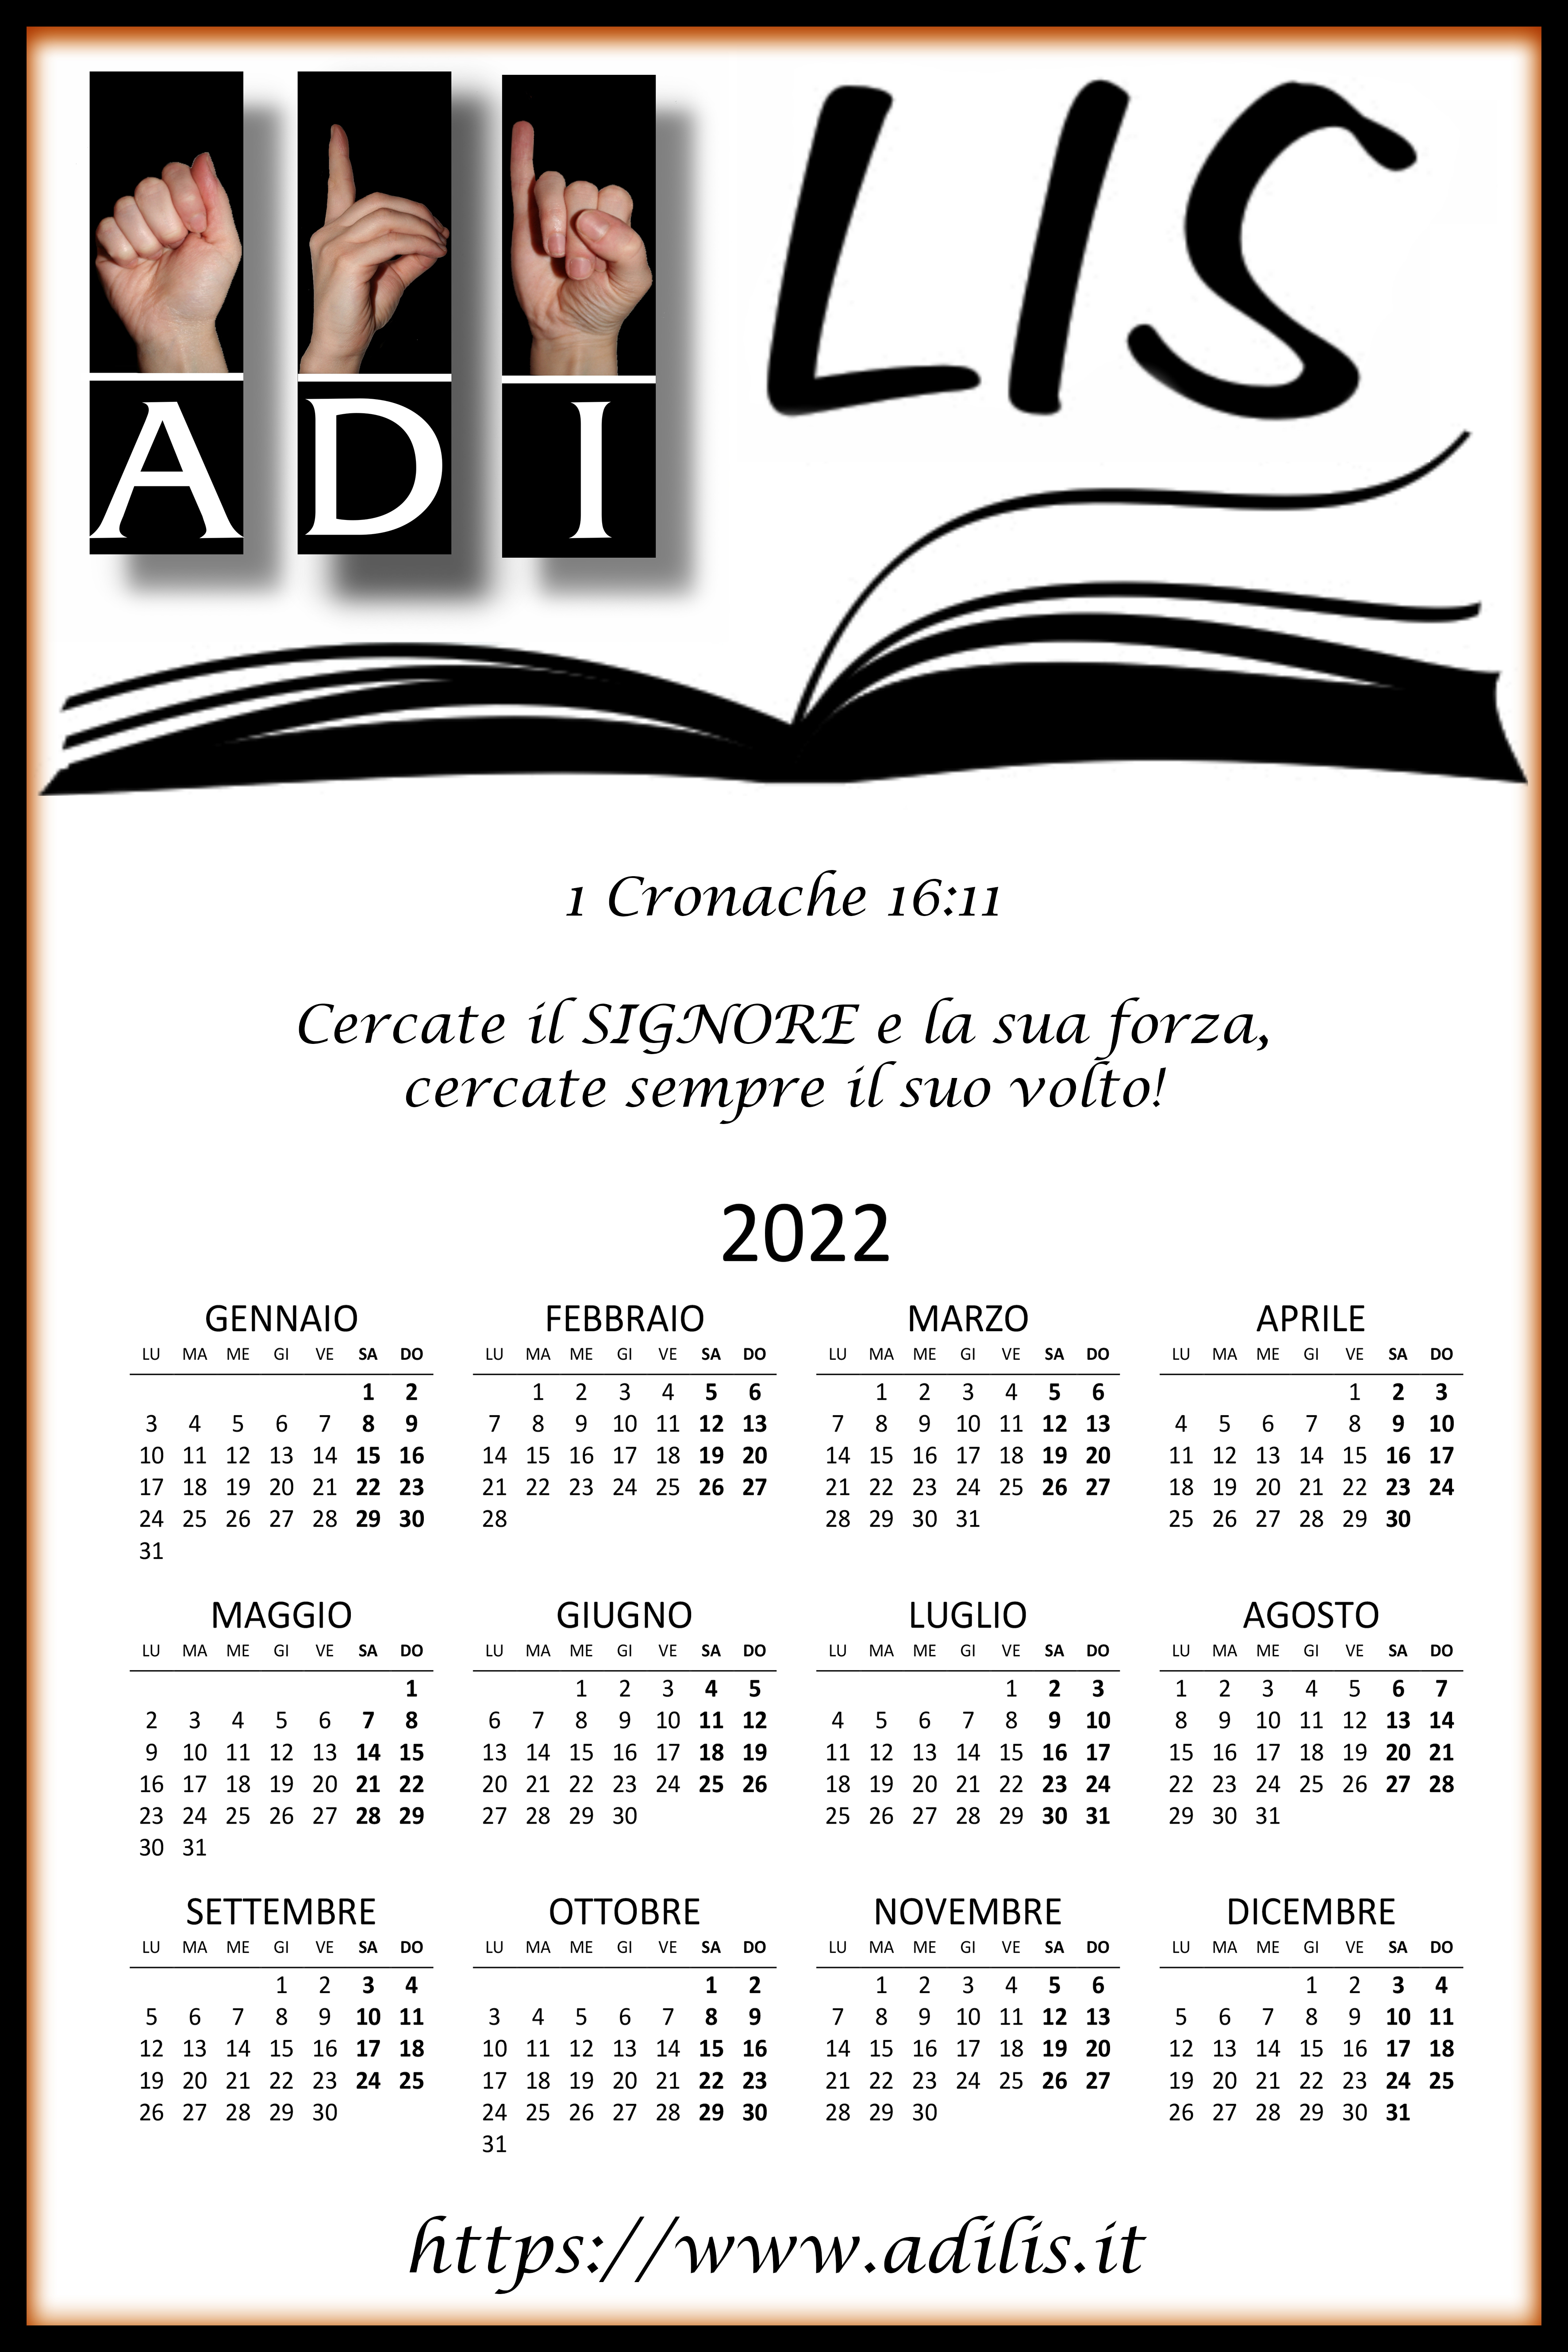 Calendario Adilis 2022